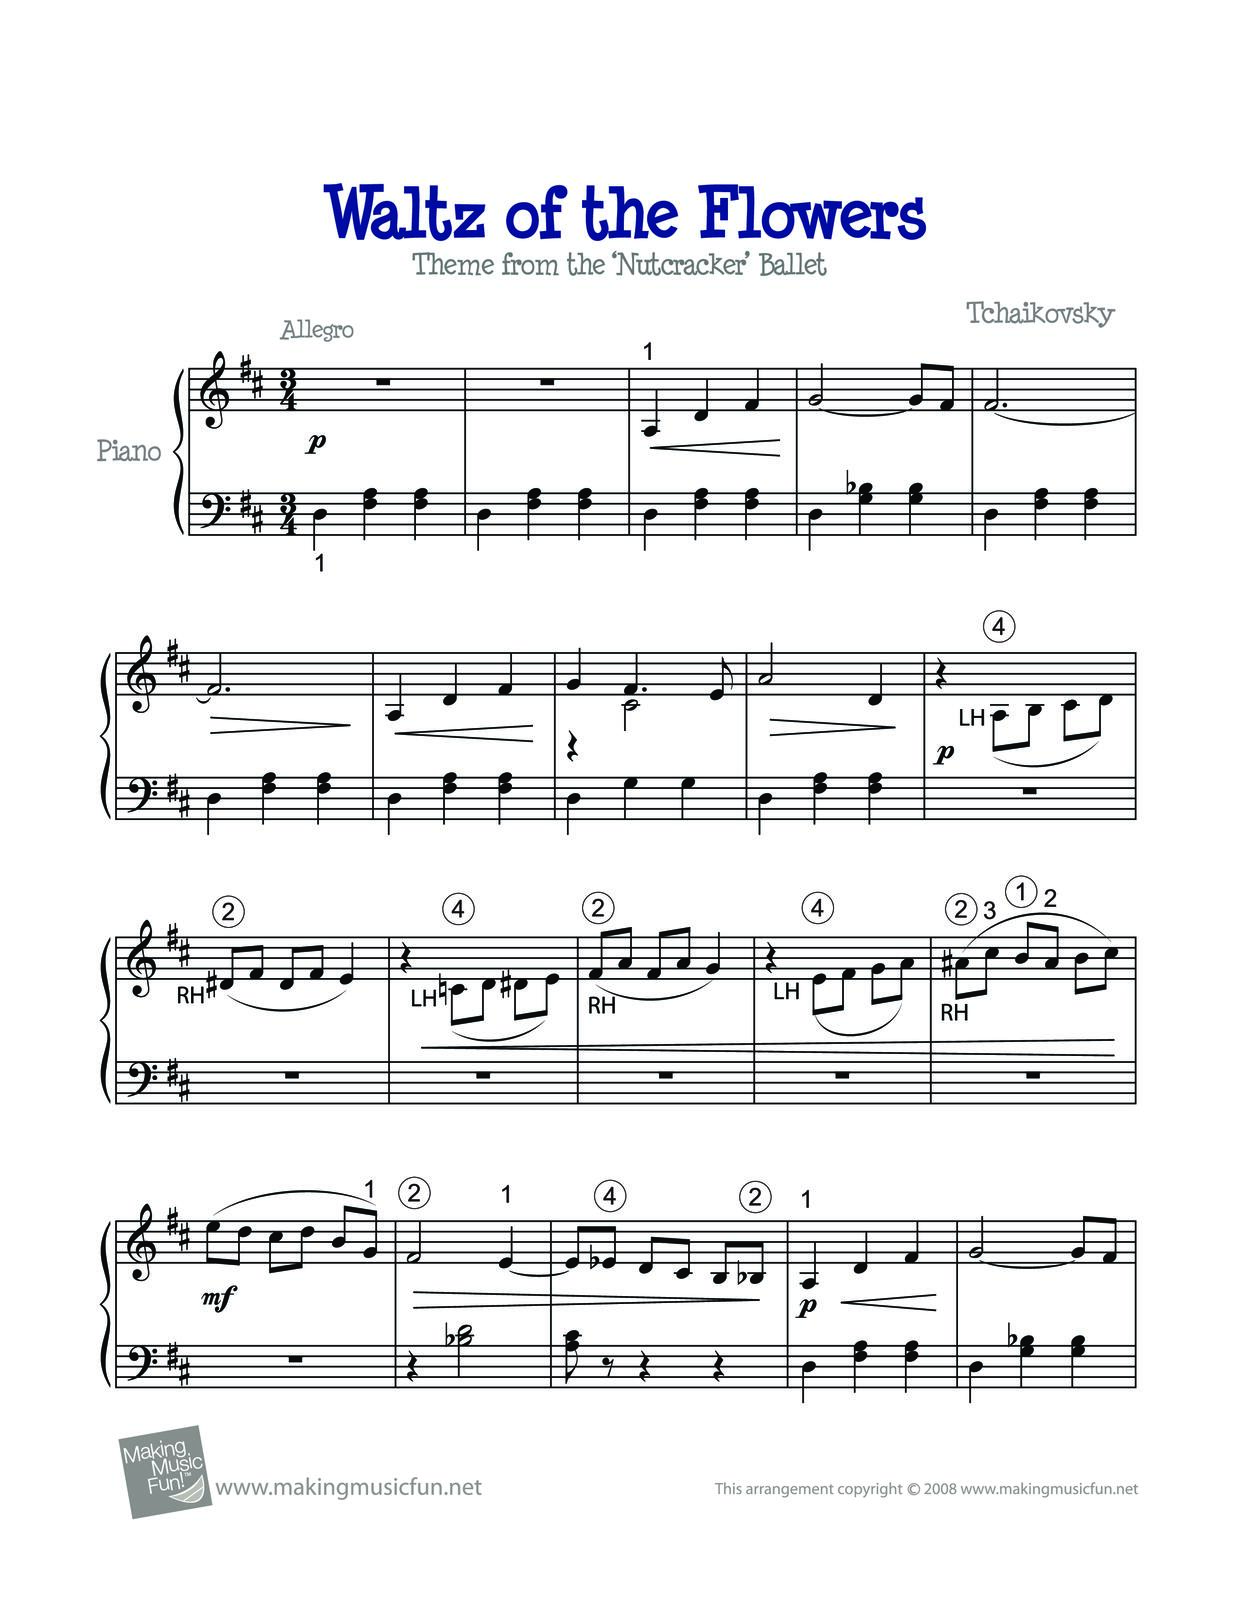 Tchaikovsky: The Nutcracker, Op. 71, Act II: No. 13, Waltz of the Flowers Score